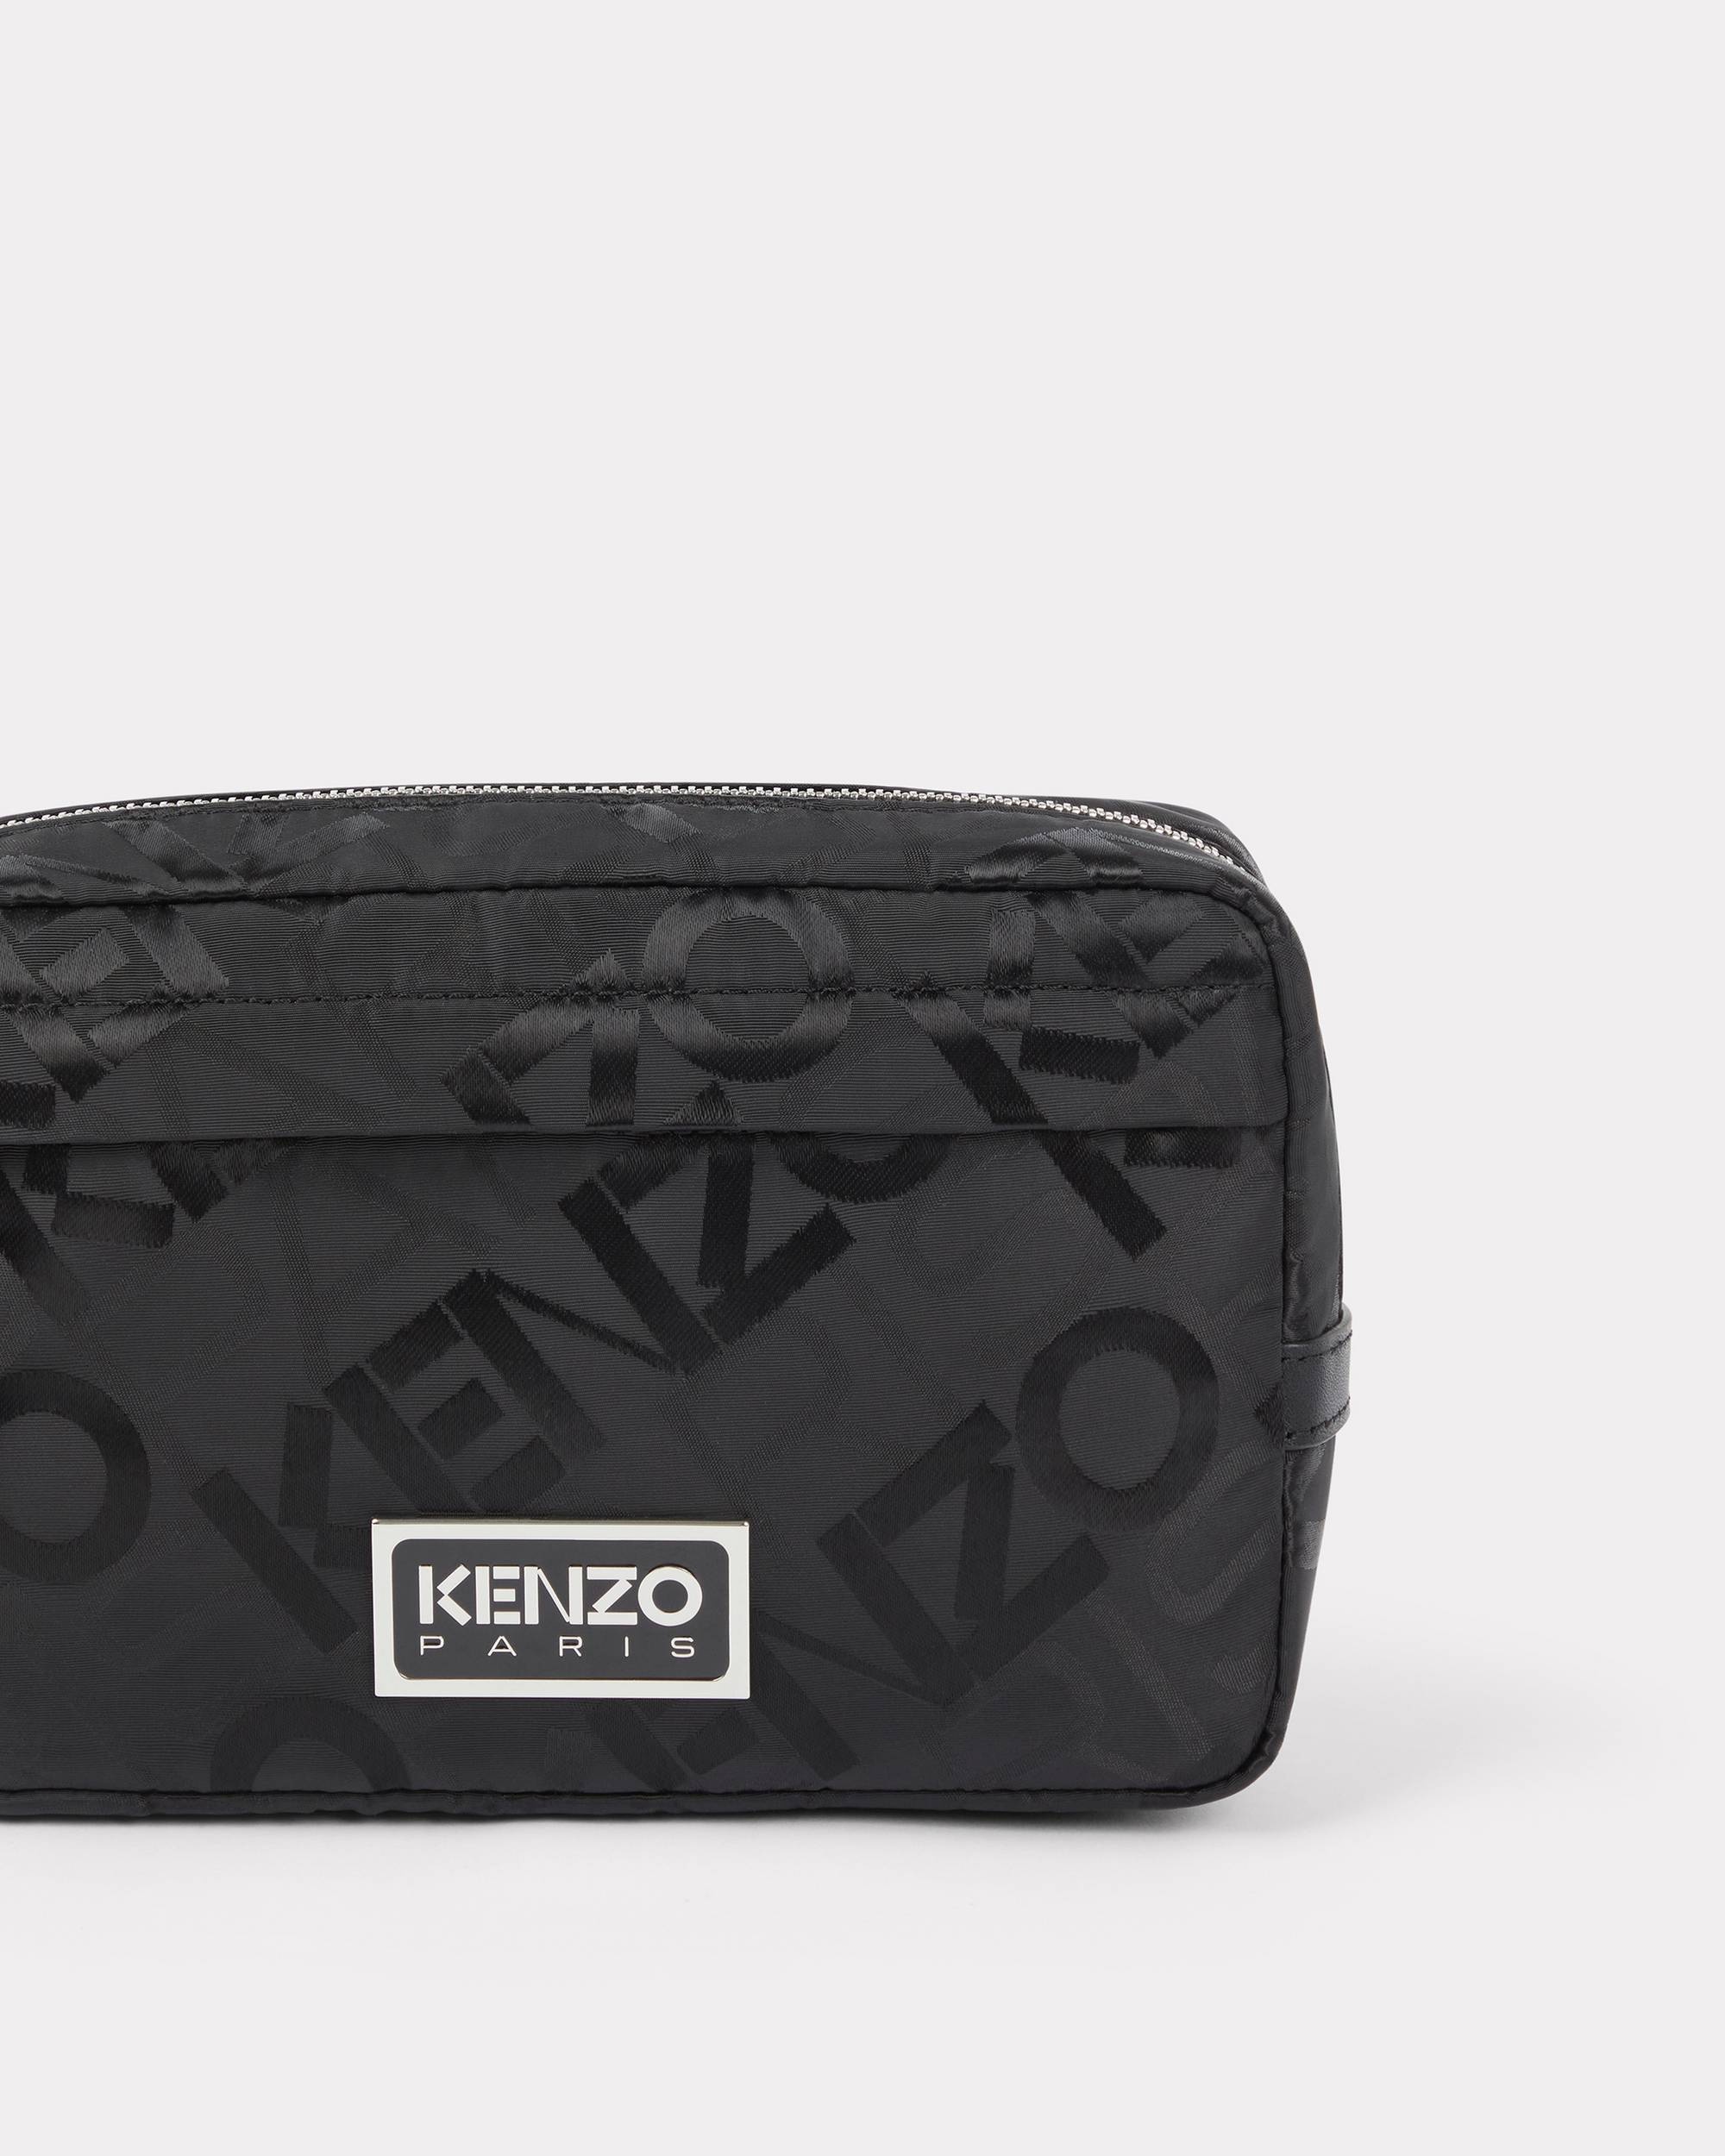 'KENZO Paris' belt bag - 3